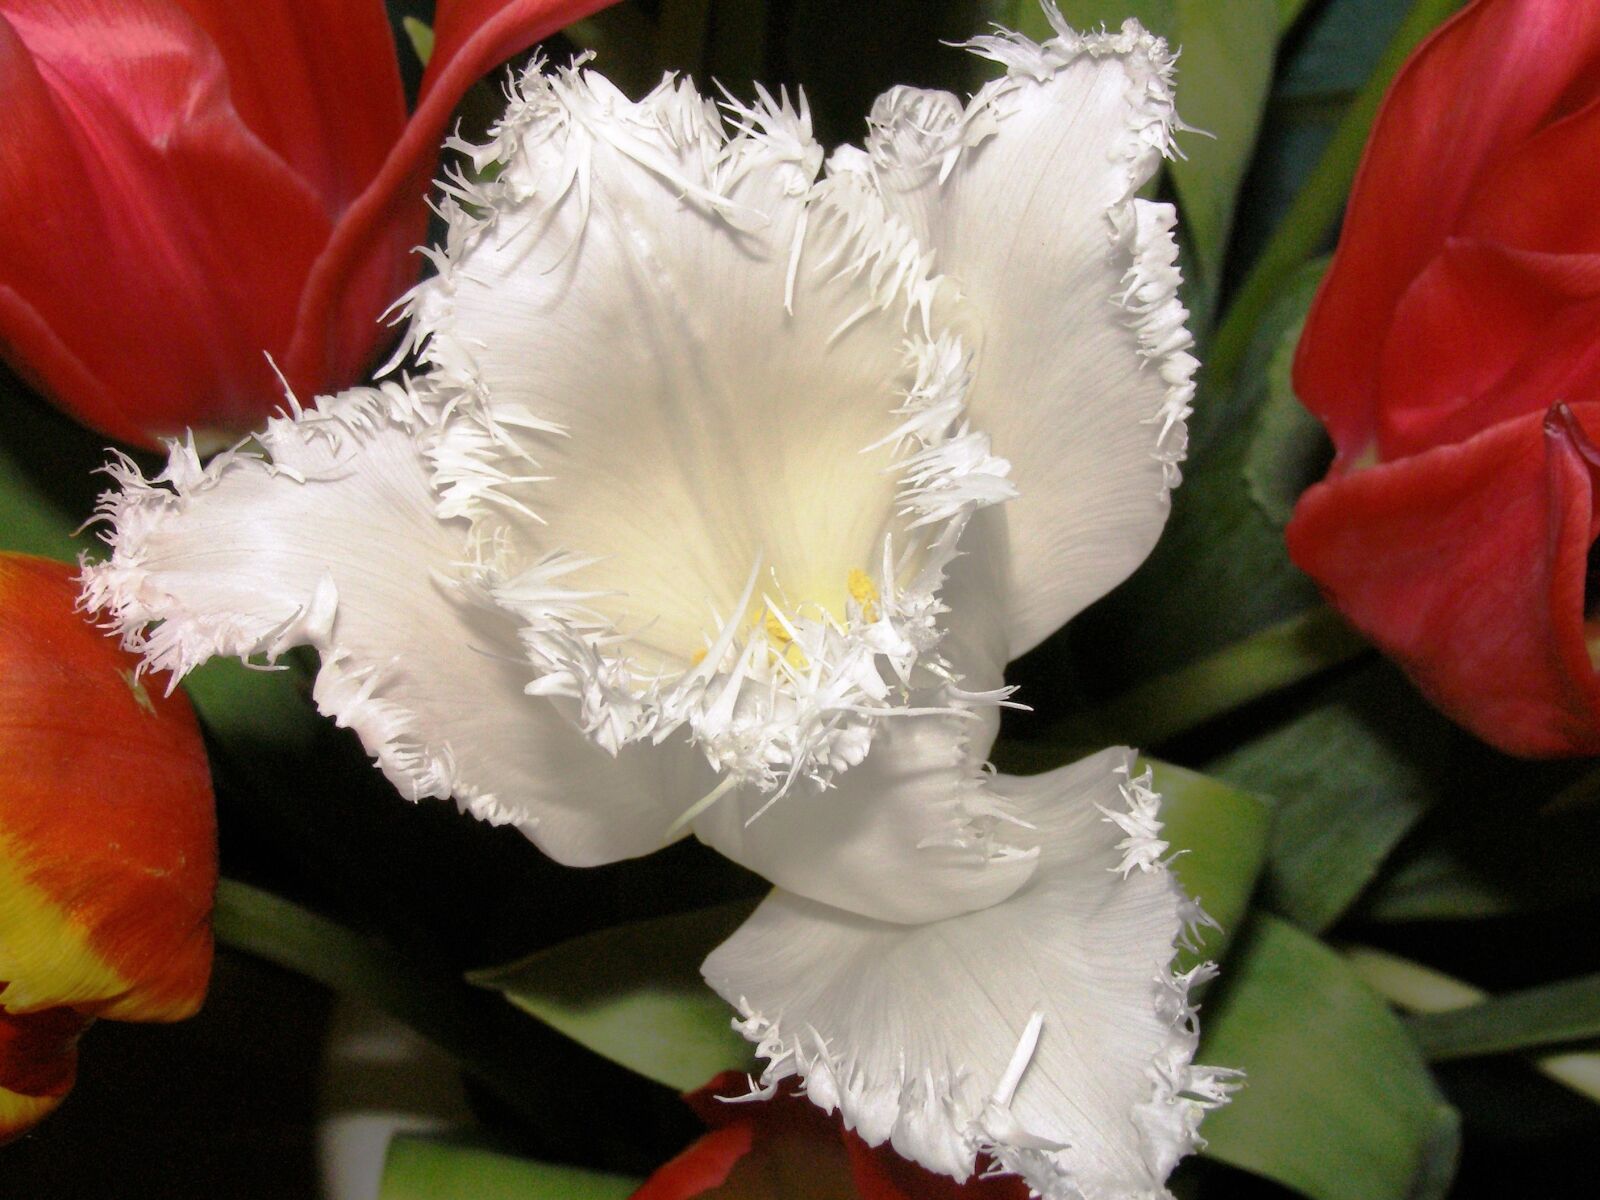 Olympus SP500UZ sample photo. Tulip, close up, white photography